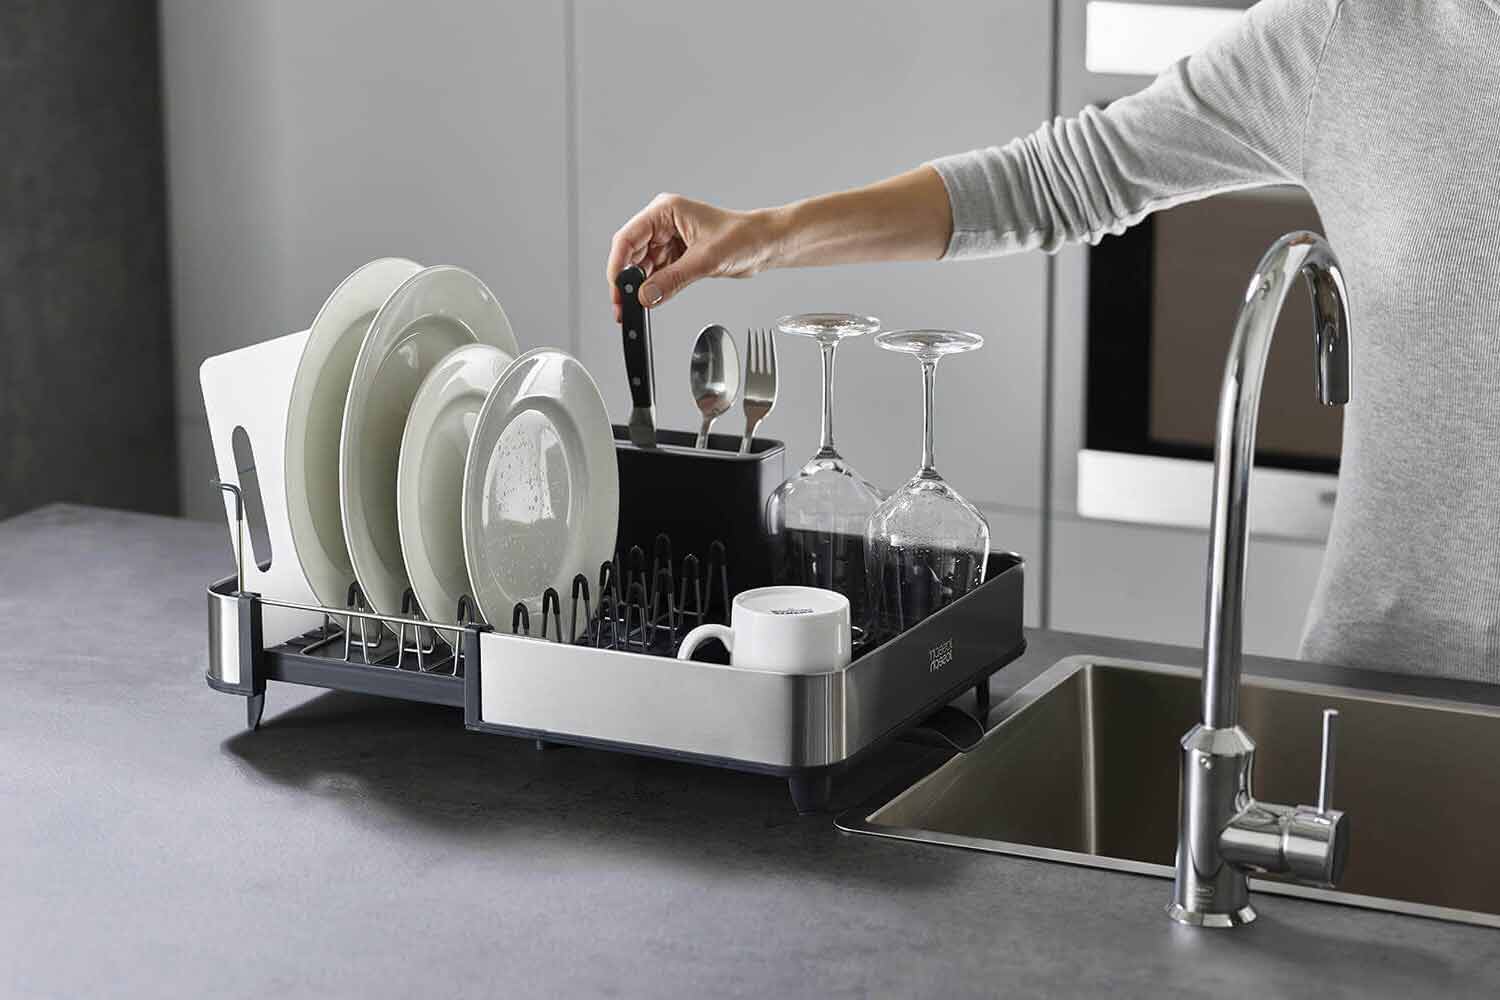 5 étapes simples pour nettoyer un égouttoir à vaisselle en plastique